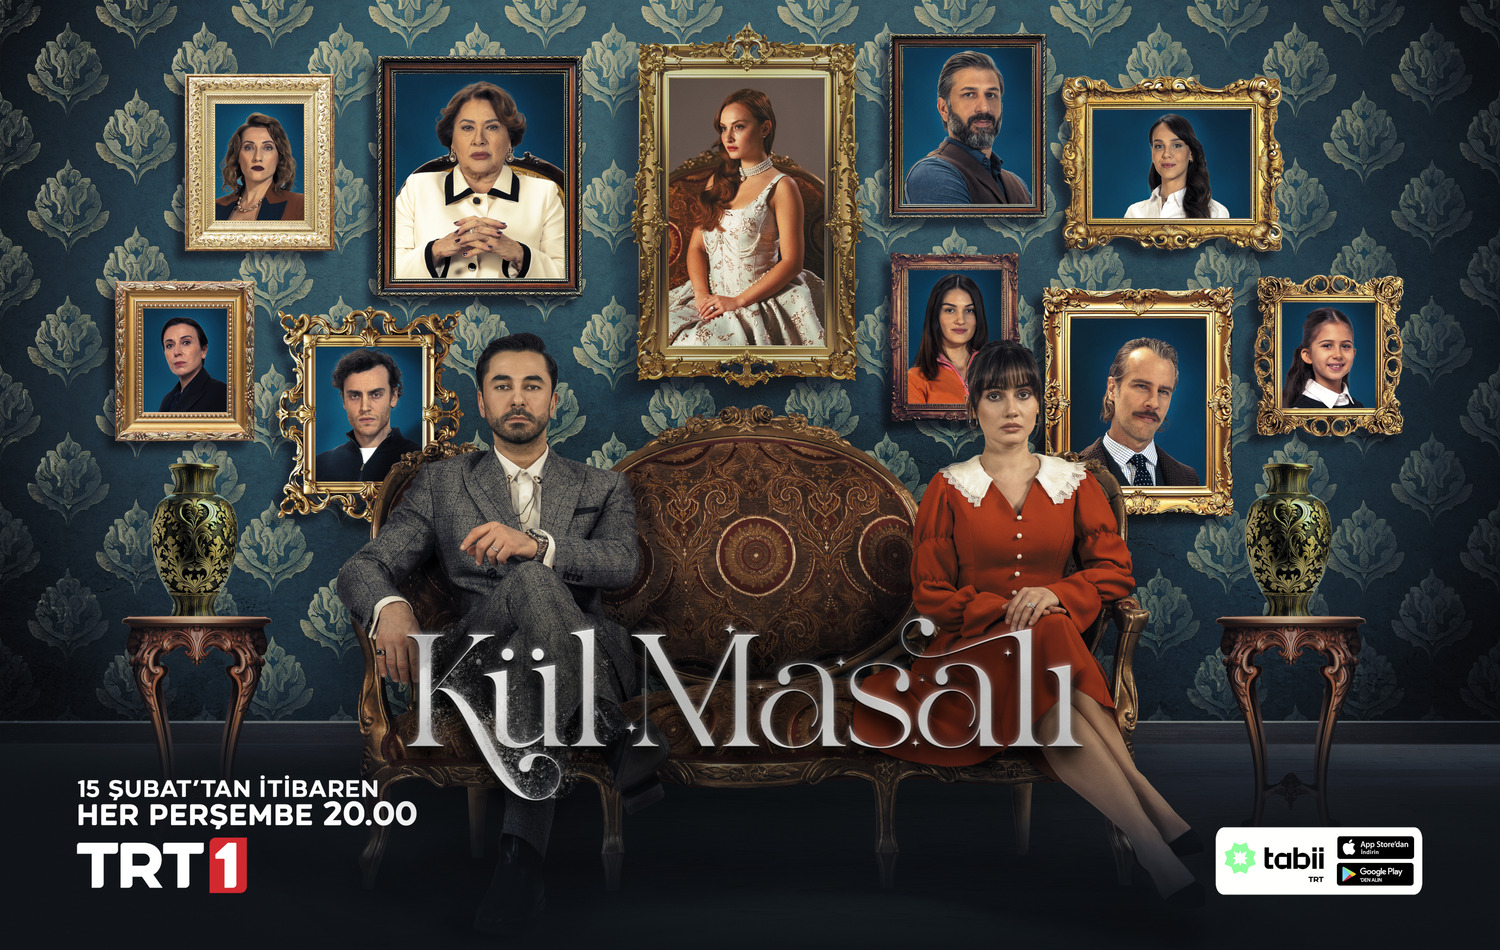 Extra Large TV Poster Image for Kül Masali 